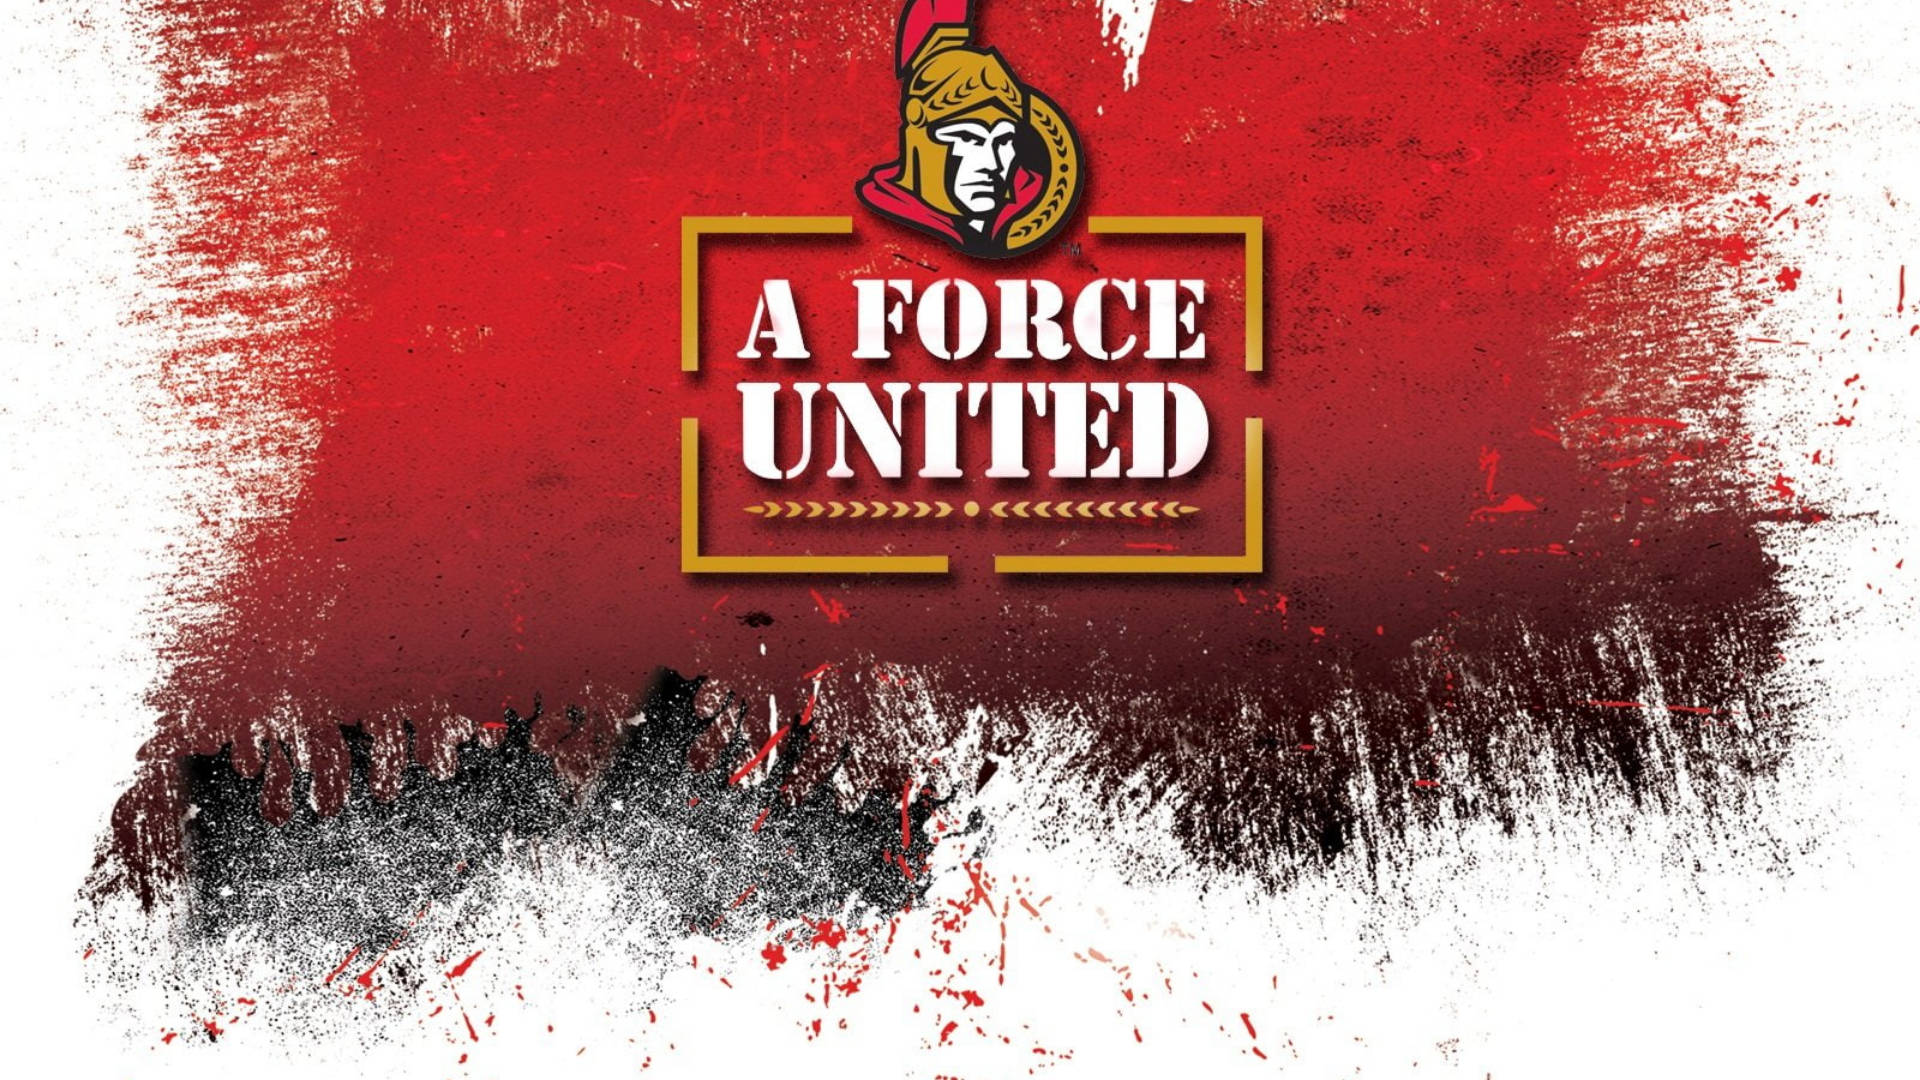 Ottawa Senators Force United Wallpaper